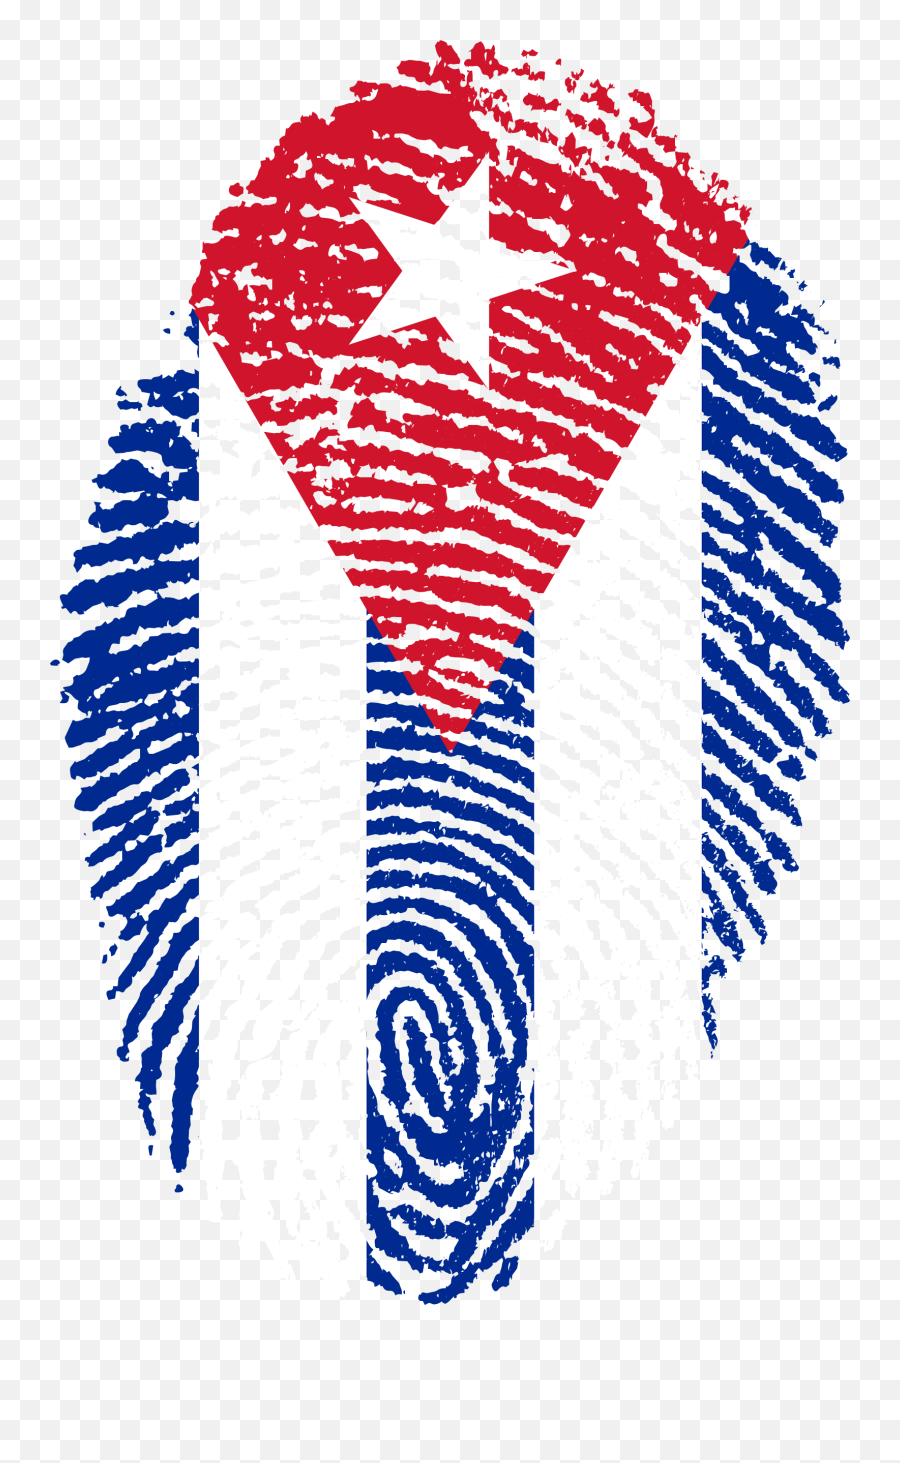 Cuba Flag Fingerprint - Cuba Flag Fingerprint Emoji,Cuba Flag Png